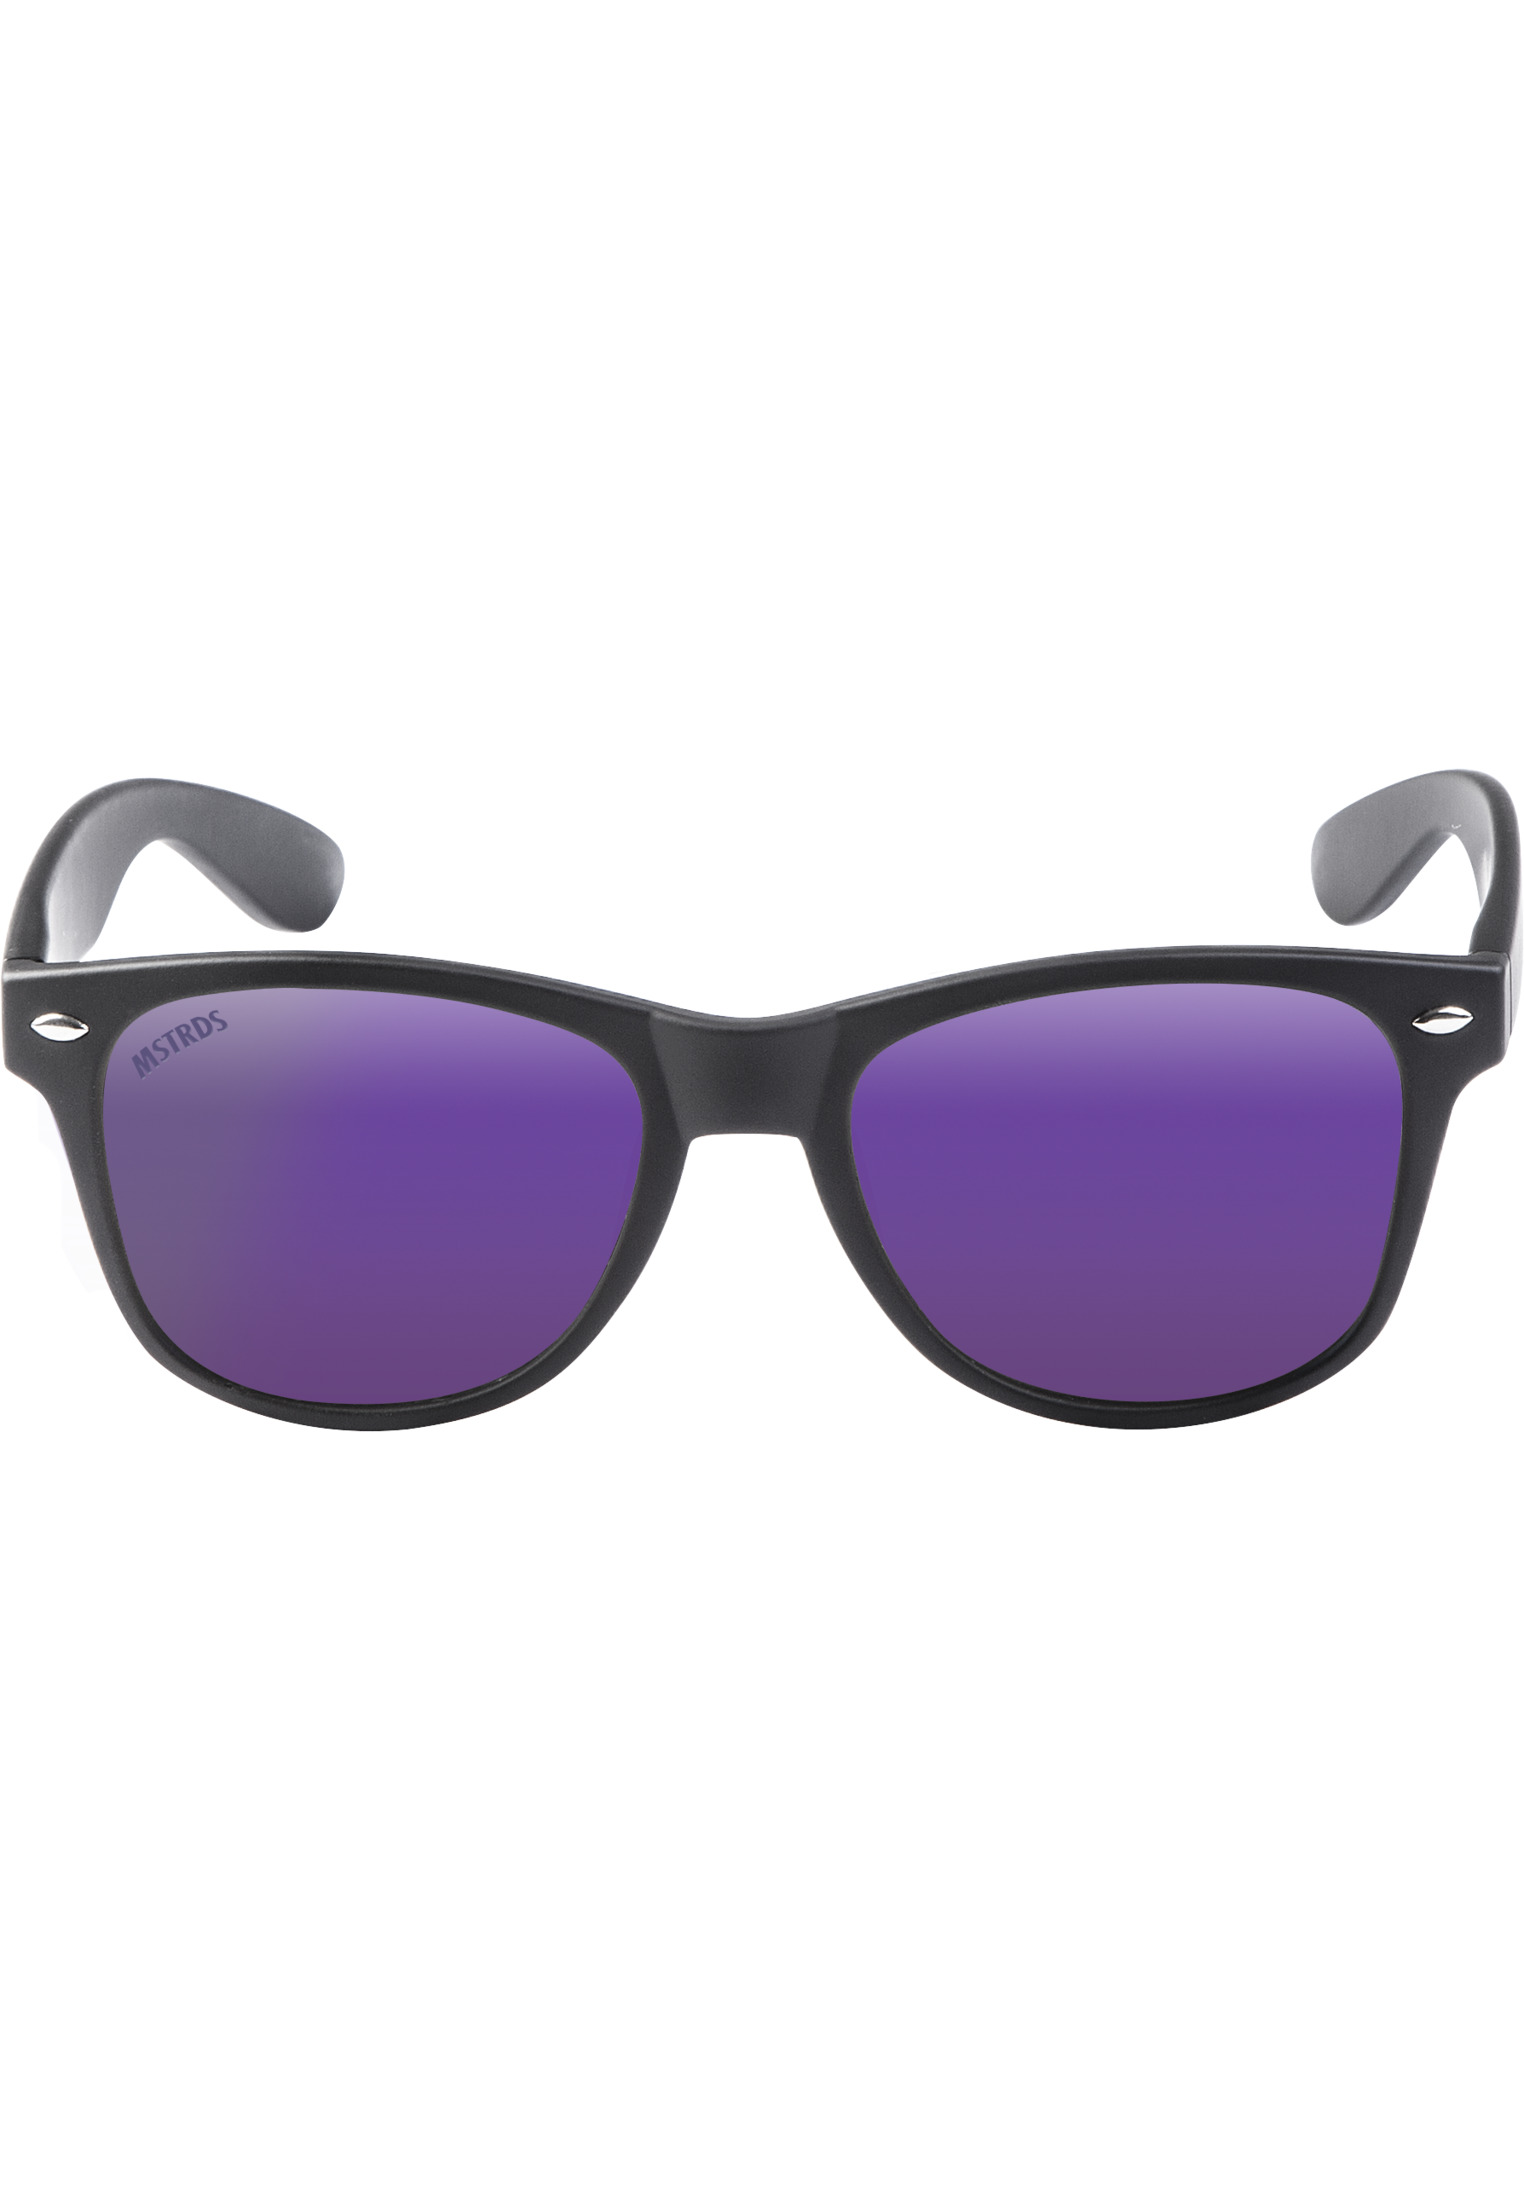 Brillen Sunglasses Likoma Youth in Farbe blk/pur